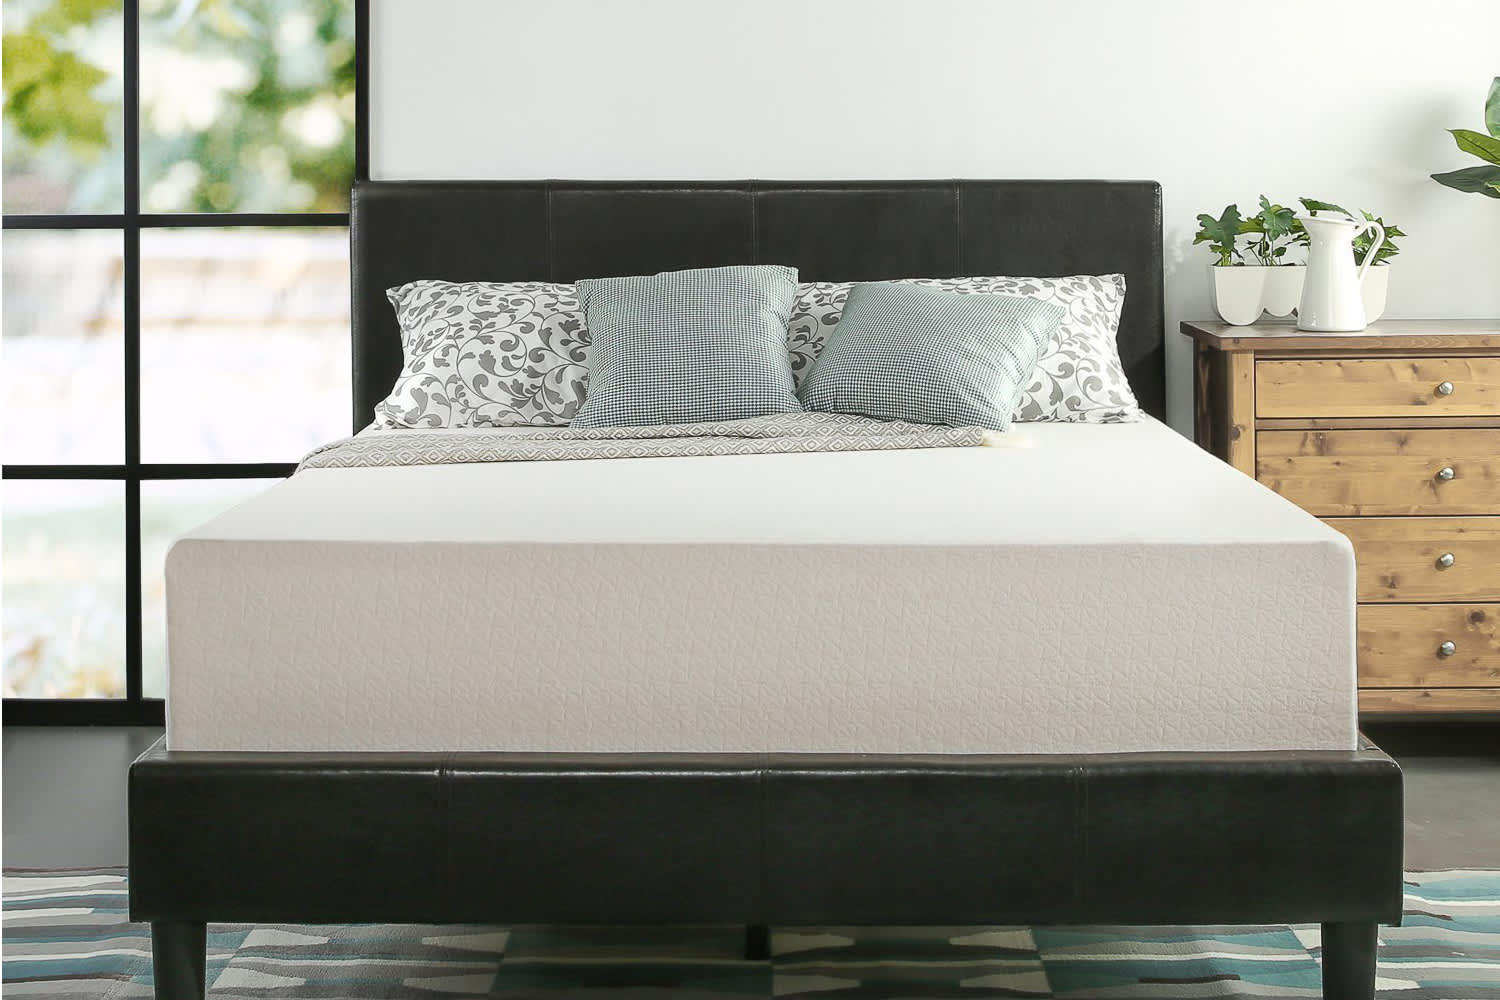 cheap sleep memory foam mattress